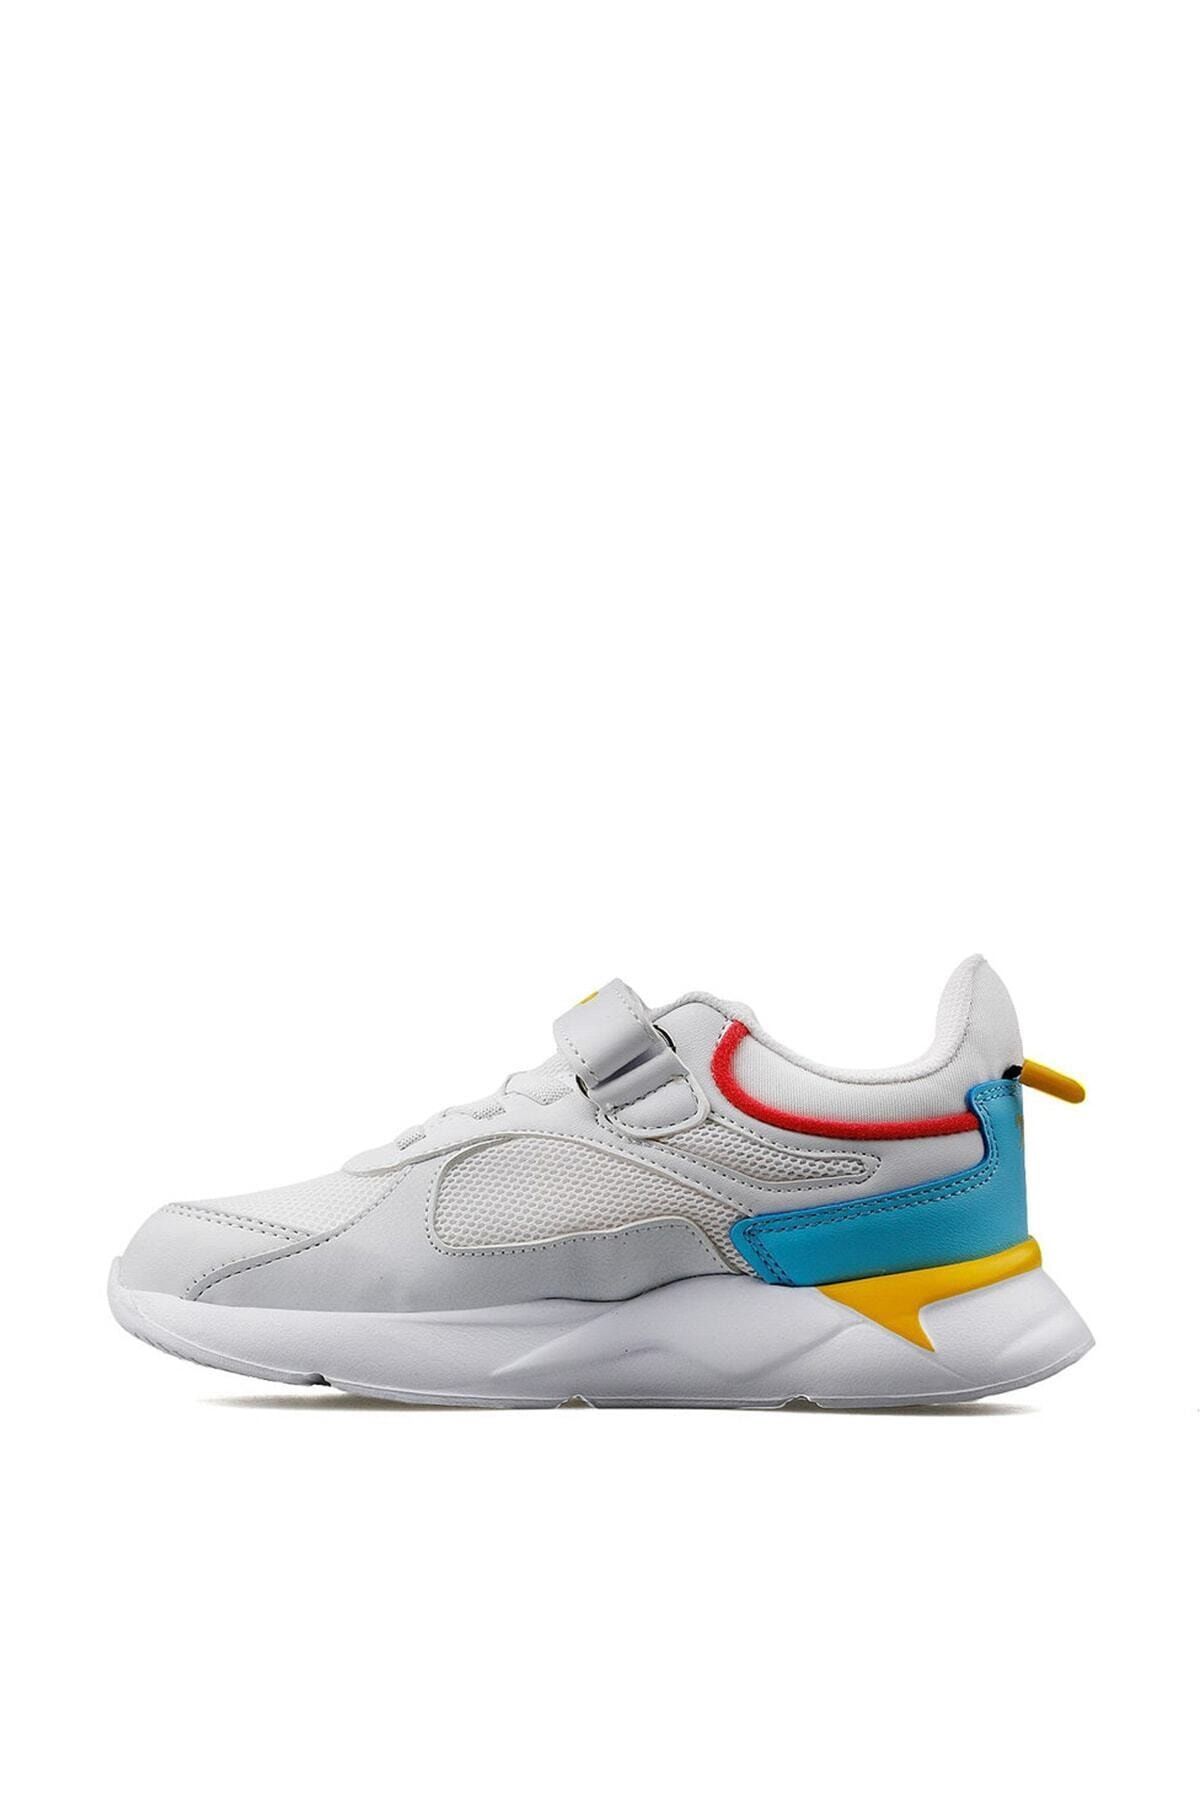 24931 Beyaz - Bebe Mavi - Sarı - Pembe Kız Çocuk Yazlık Günlük Yürüyüş Sneaker Spor Ayakkabı